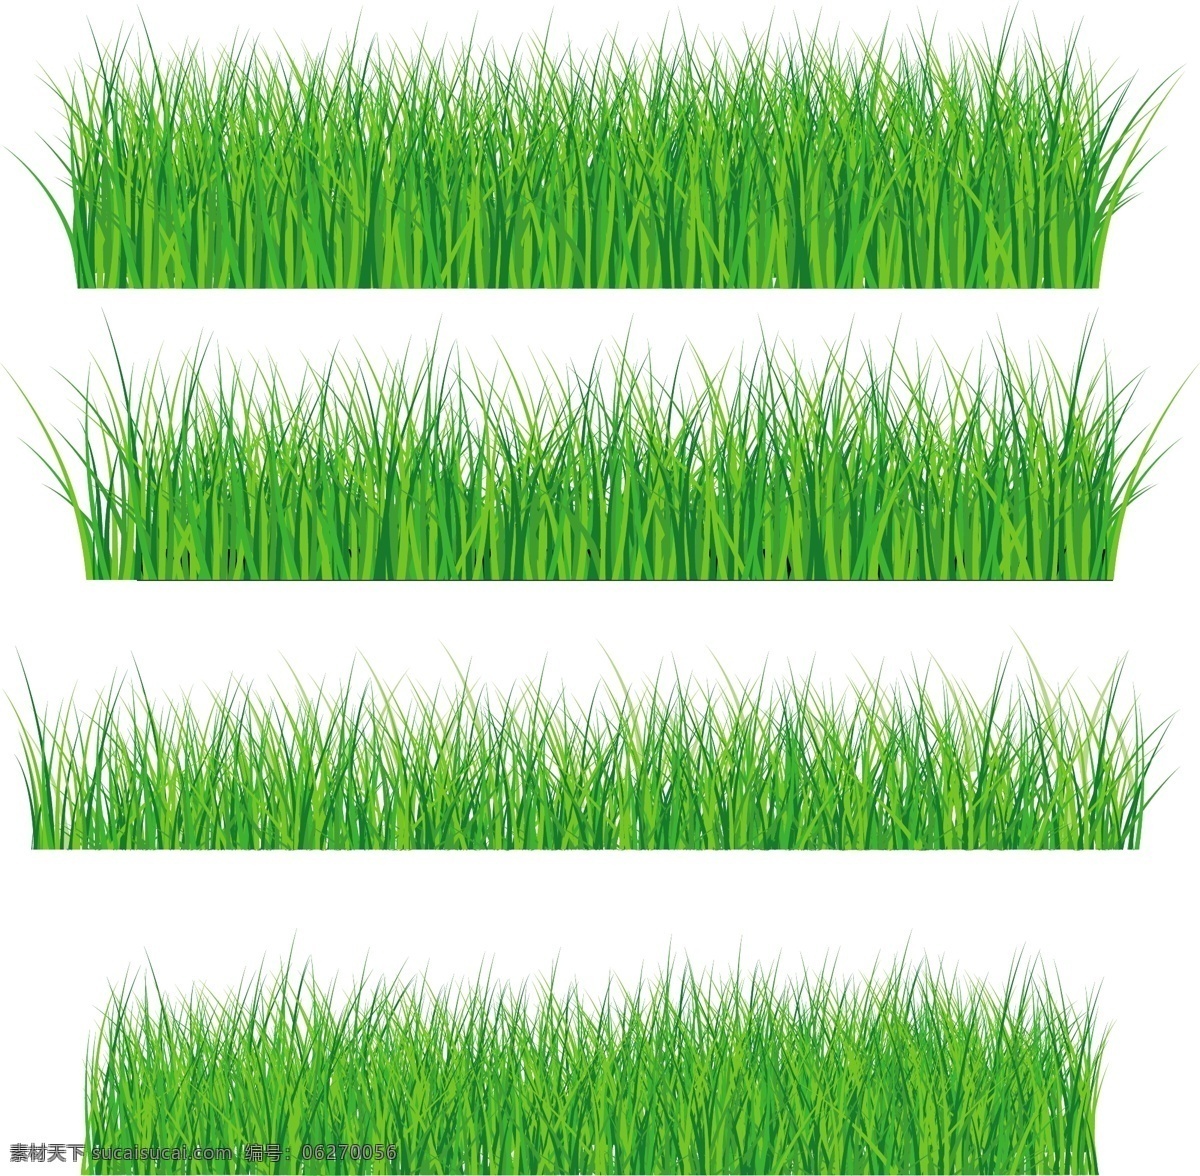 向量 元素 集 绿 草 草绿色 绿色 矢量植物 绿色的草地 矢量图 其他矢量图